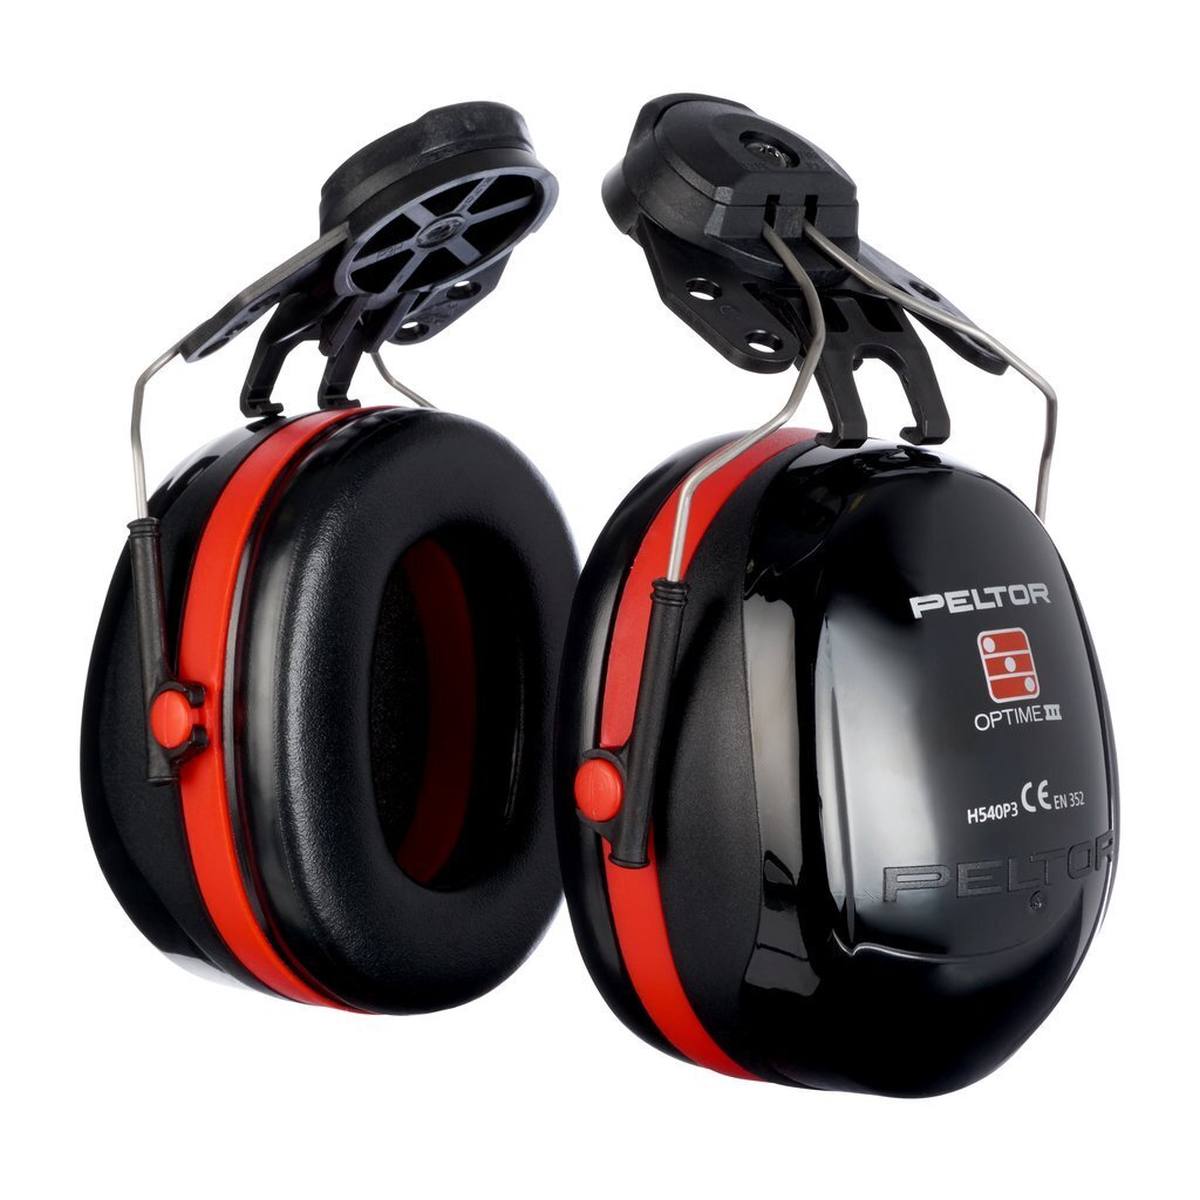 cuffie auricolari 3M PELTOR Optime III, attacco per casco, nero, con adattatore per casco, SNR=34 dB, H540P3H-413-SV